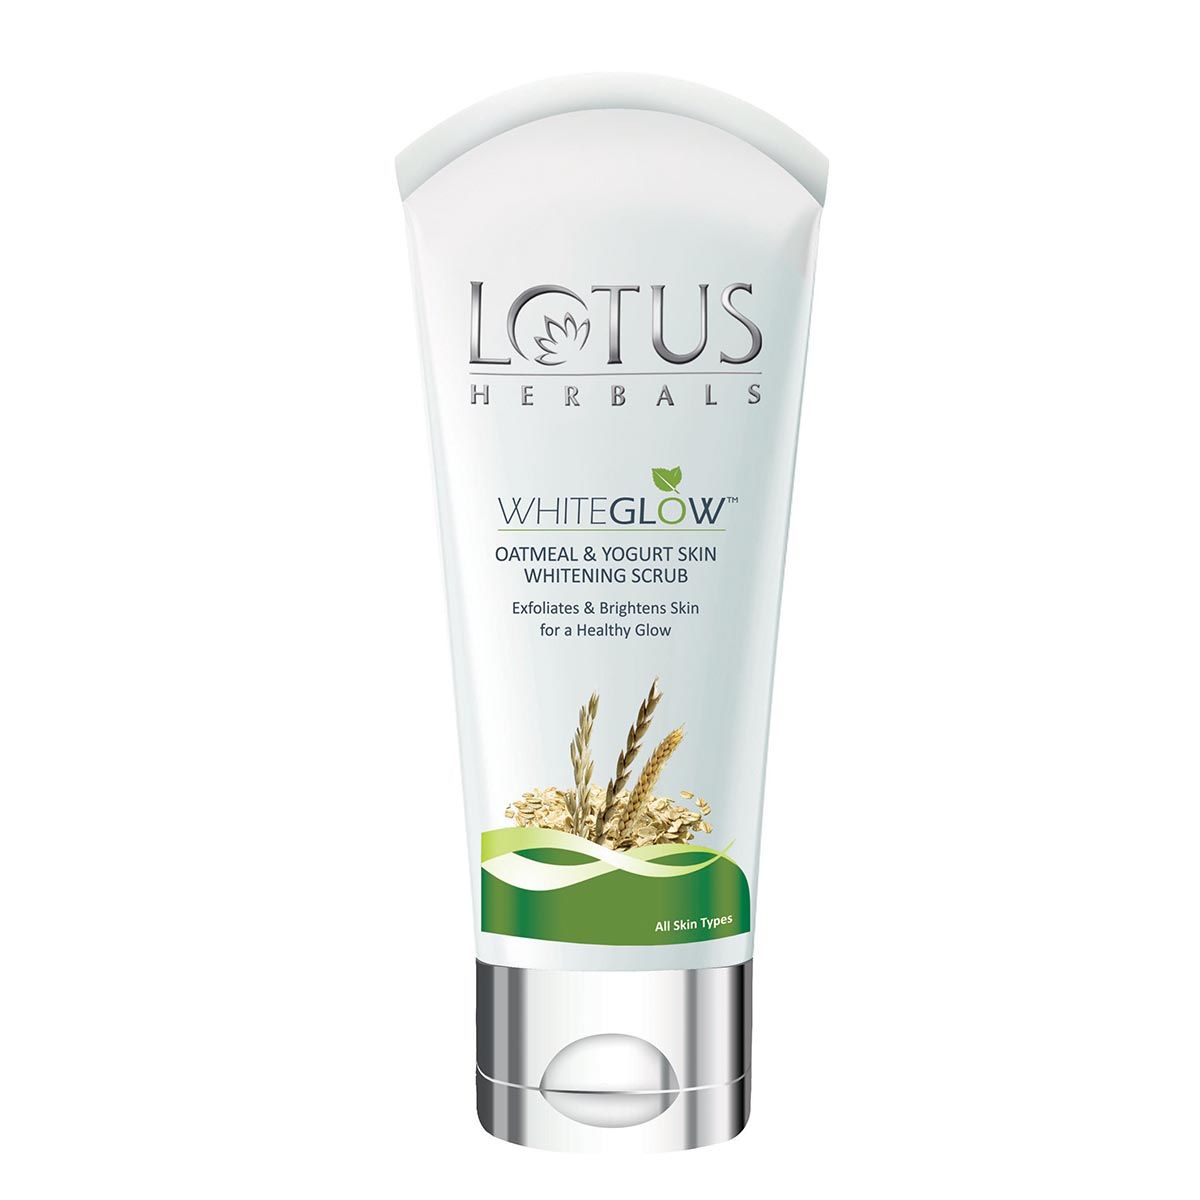 Buy Lotus Herbals Whiteglow Oatmeal & Yogurt Skin Whitening Scrub, 100 gm Online